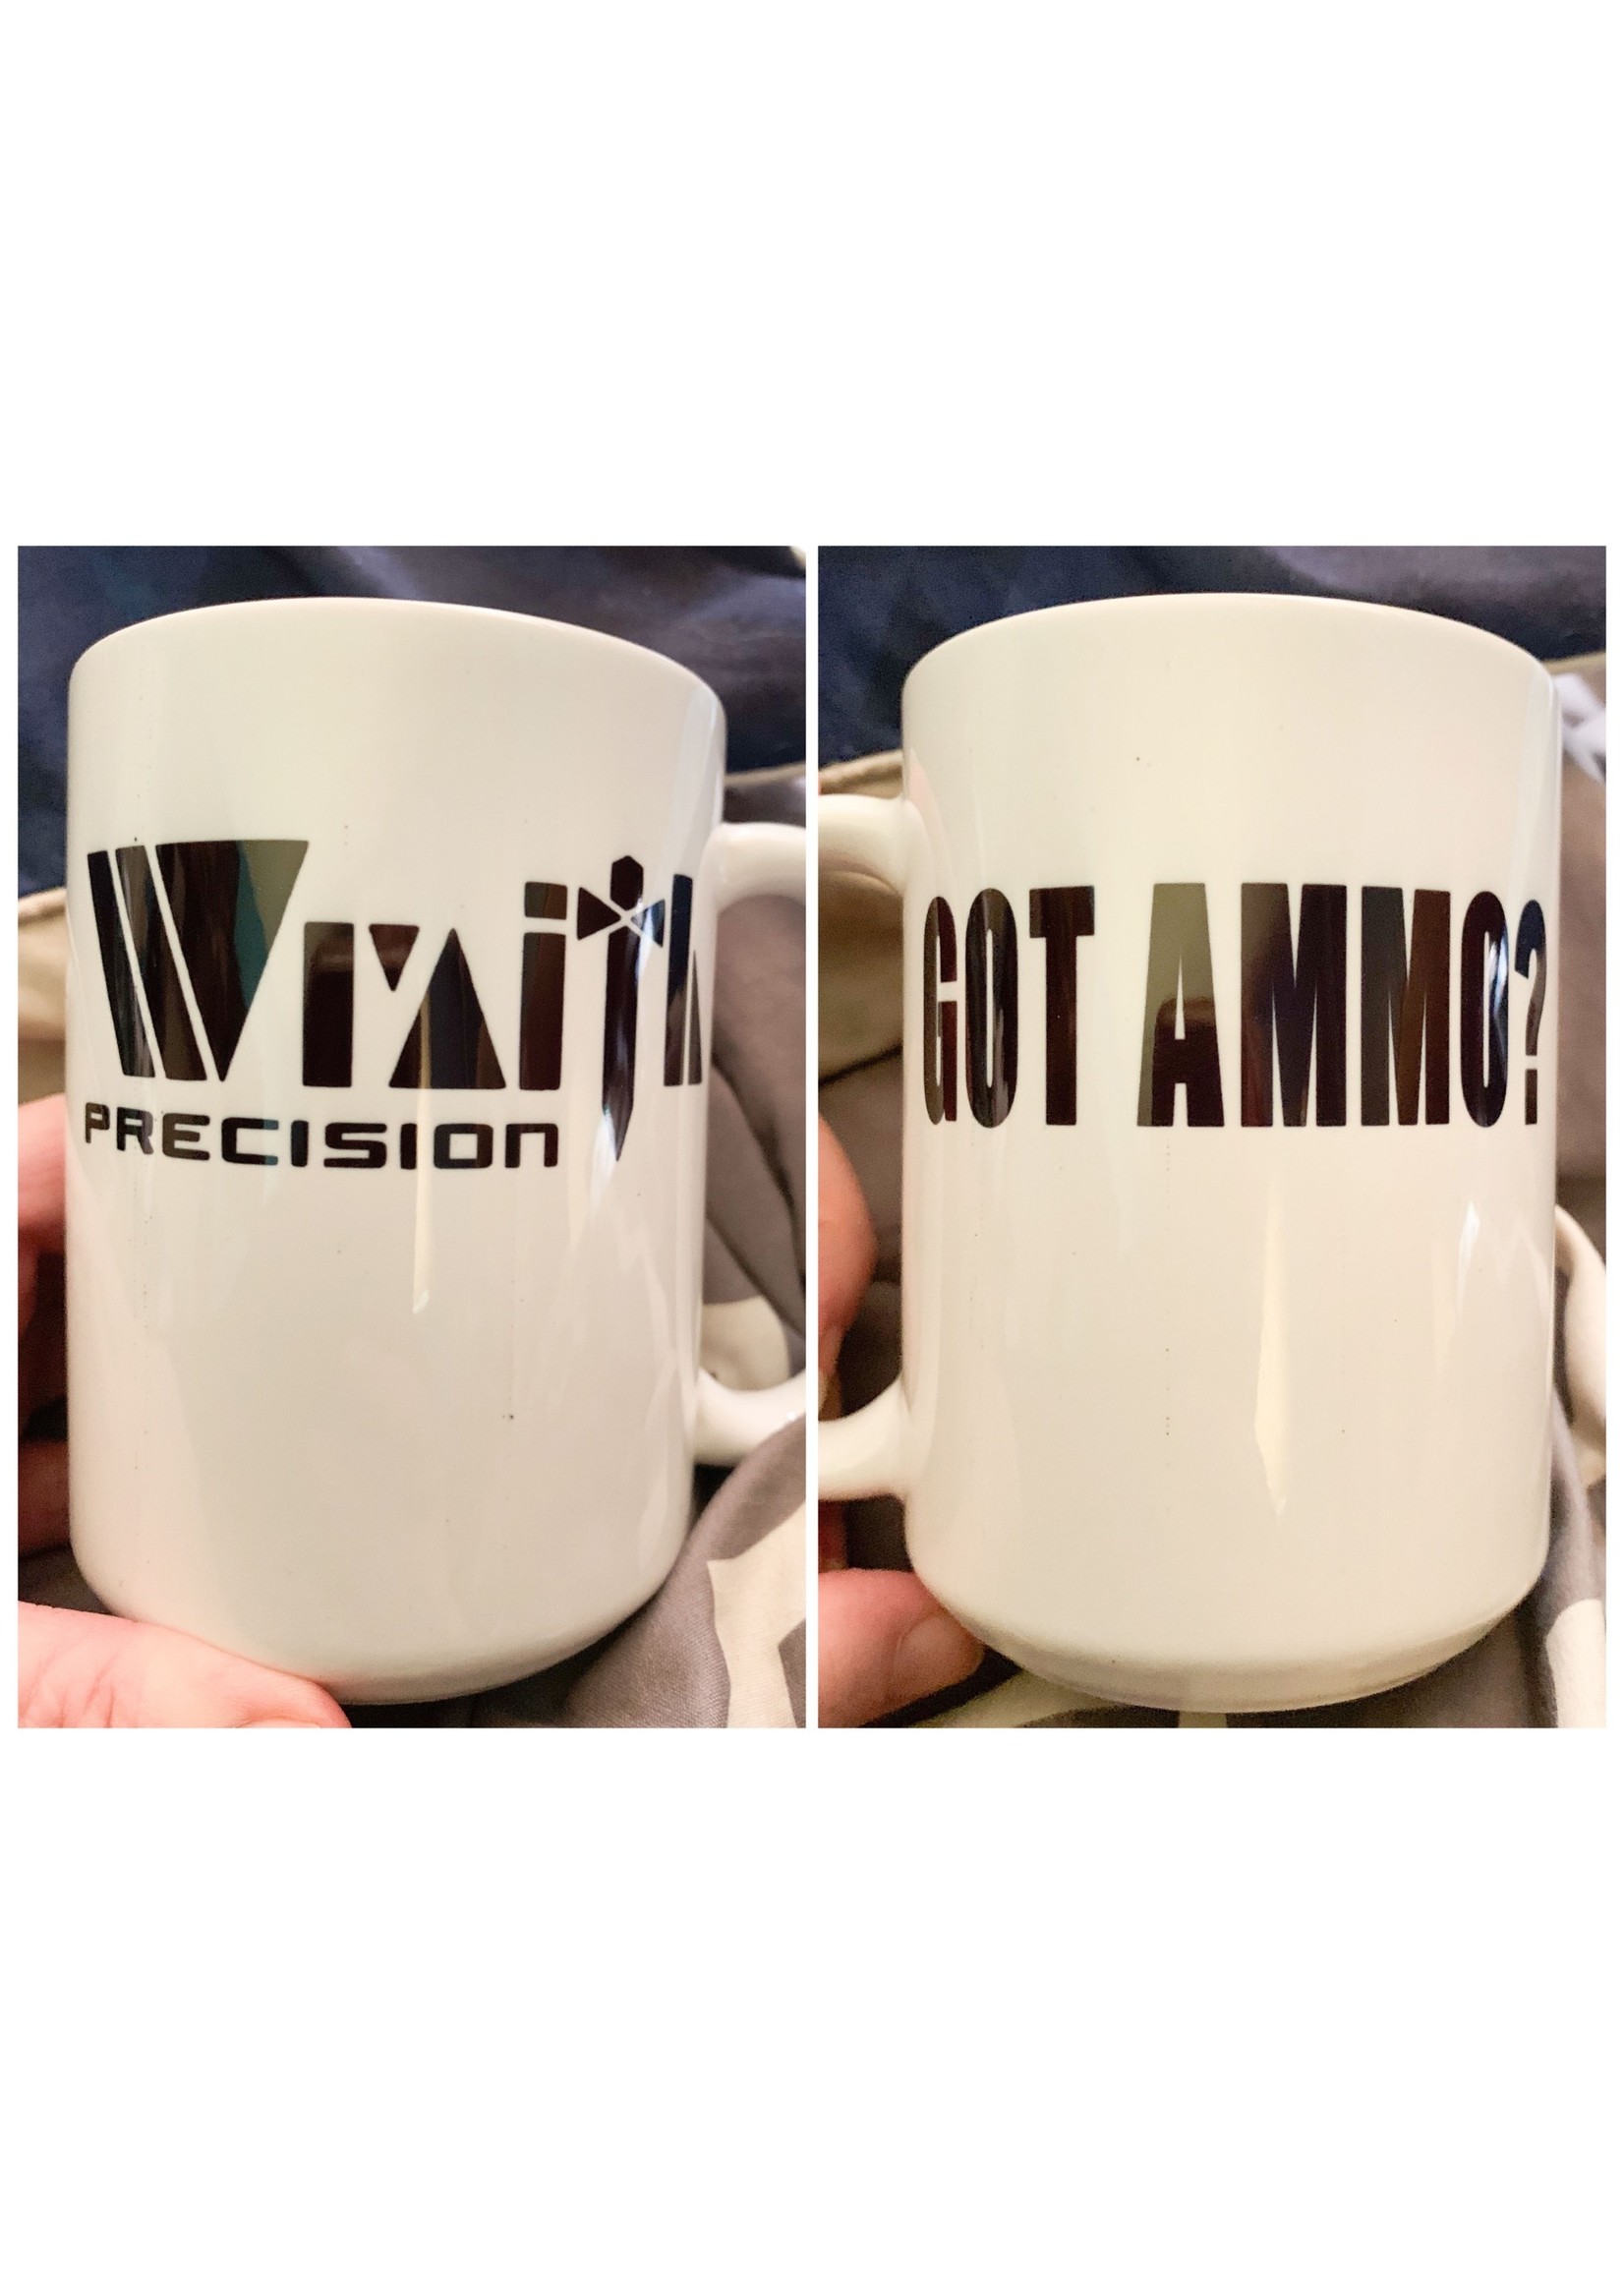 Wraith Precision Wraith Precision Mug, 15 oz.